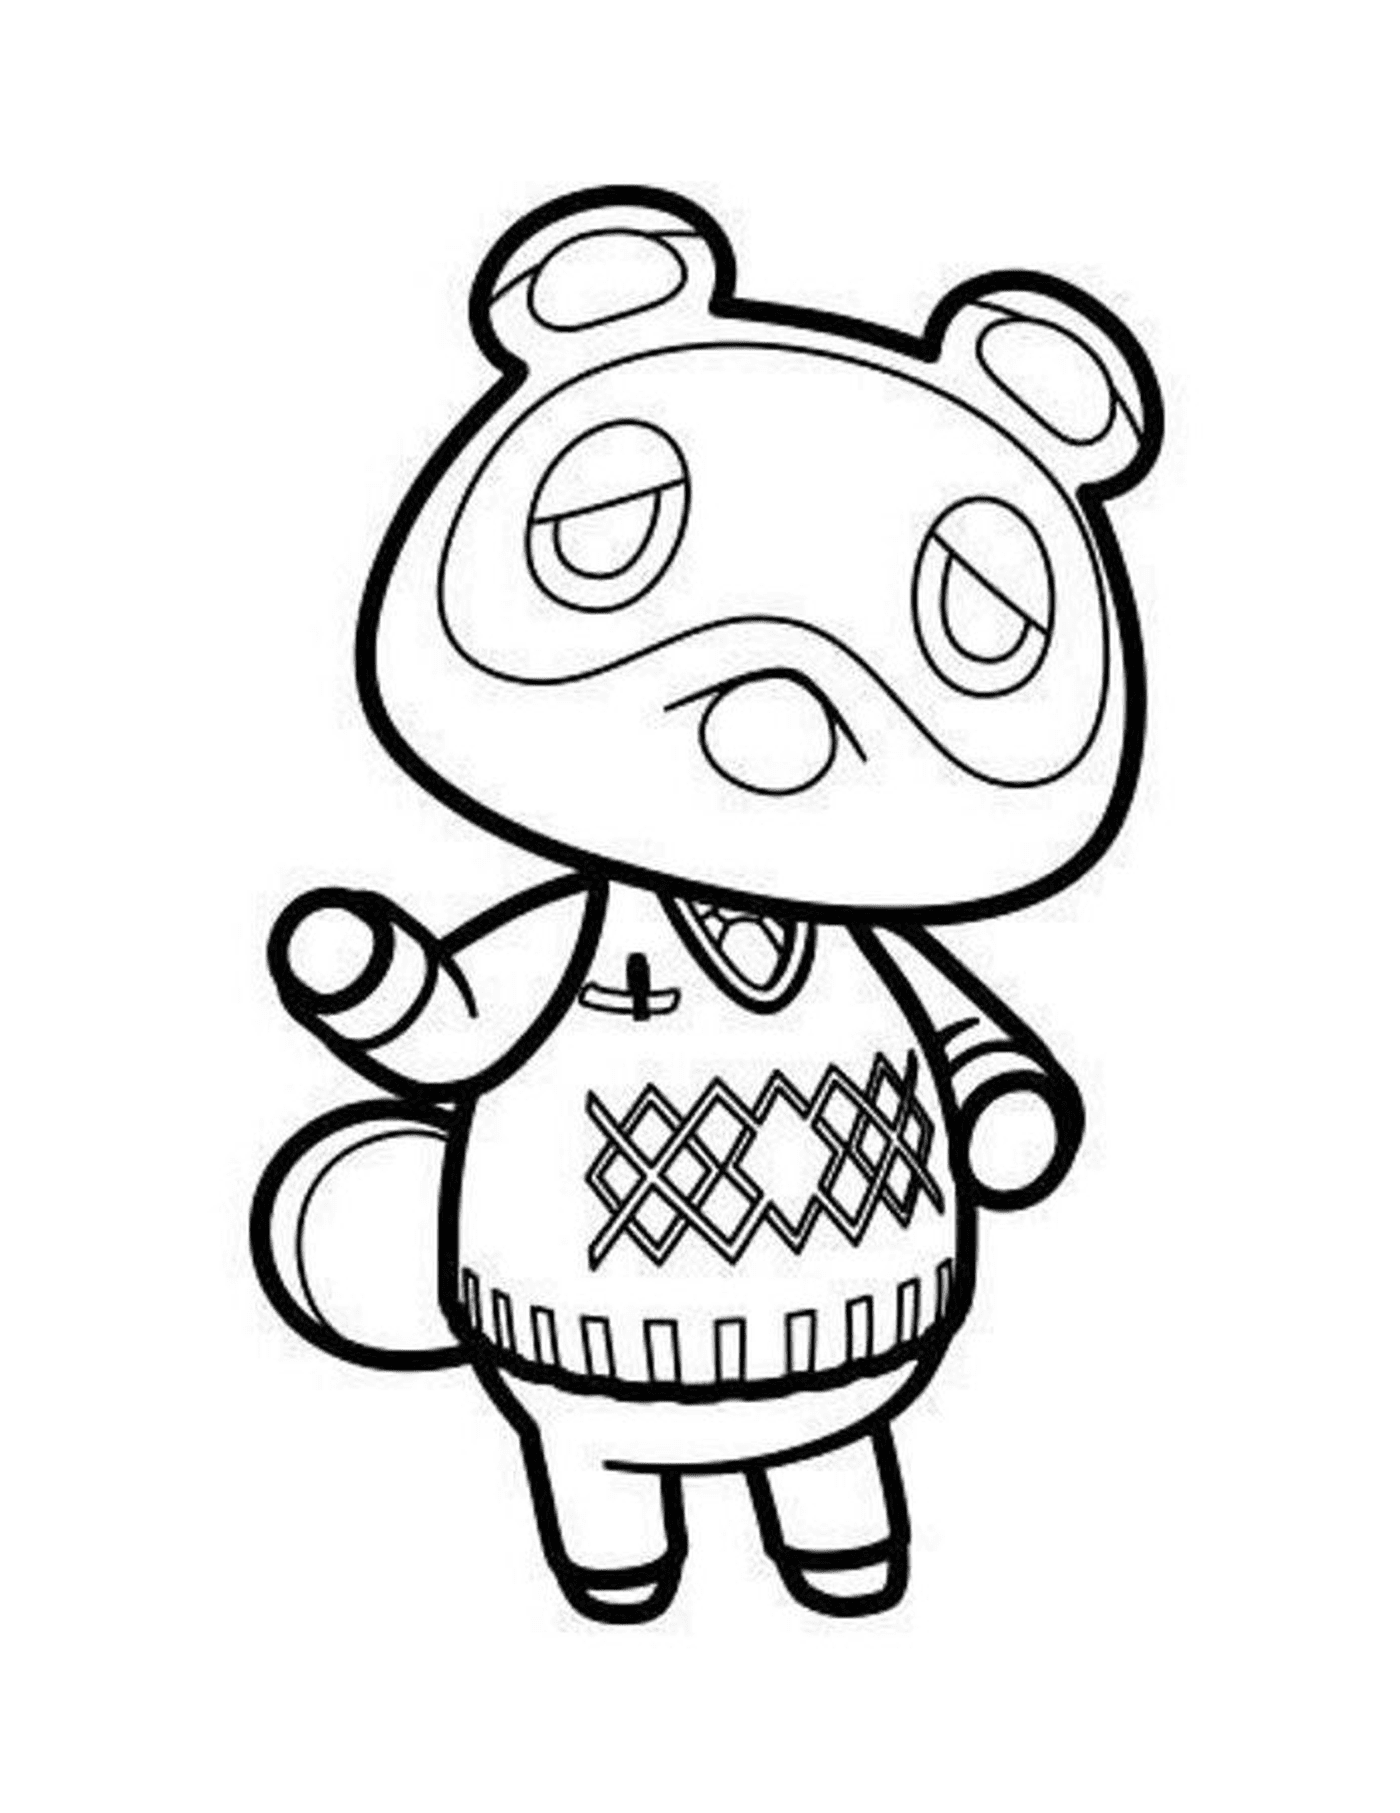  Tom Nook de Animal Crossing, animal con un suéter 